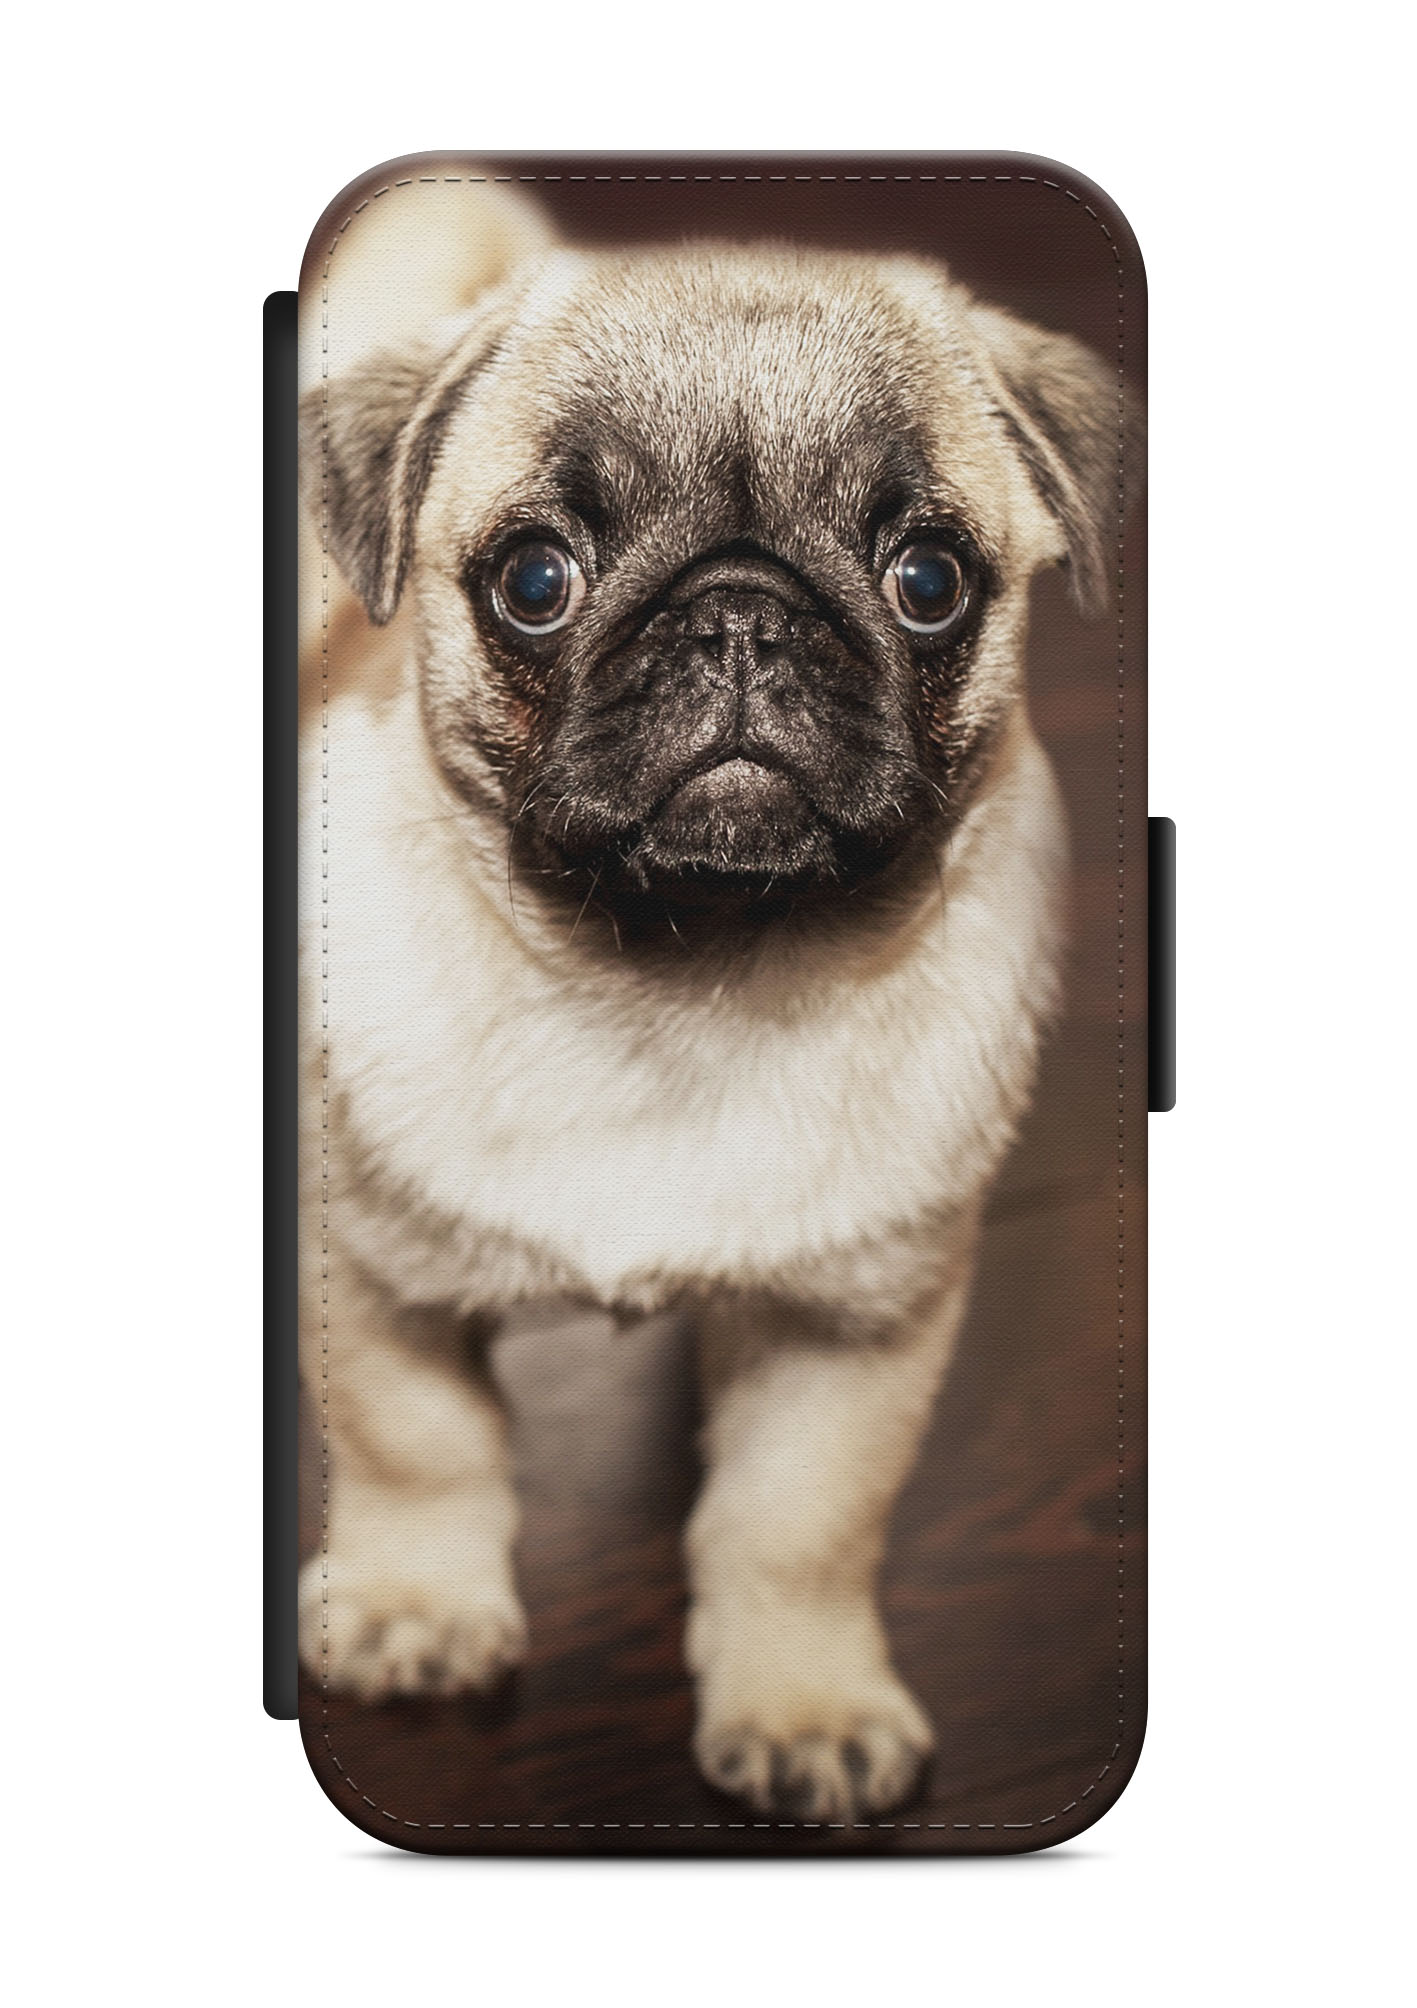 Samsung Galaxy Flip Etui Tasche Handyhülle Case Cover Schutz Hund Dog